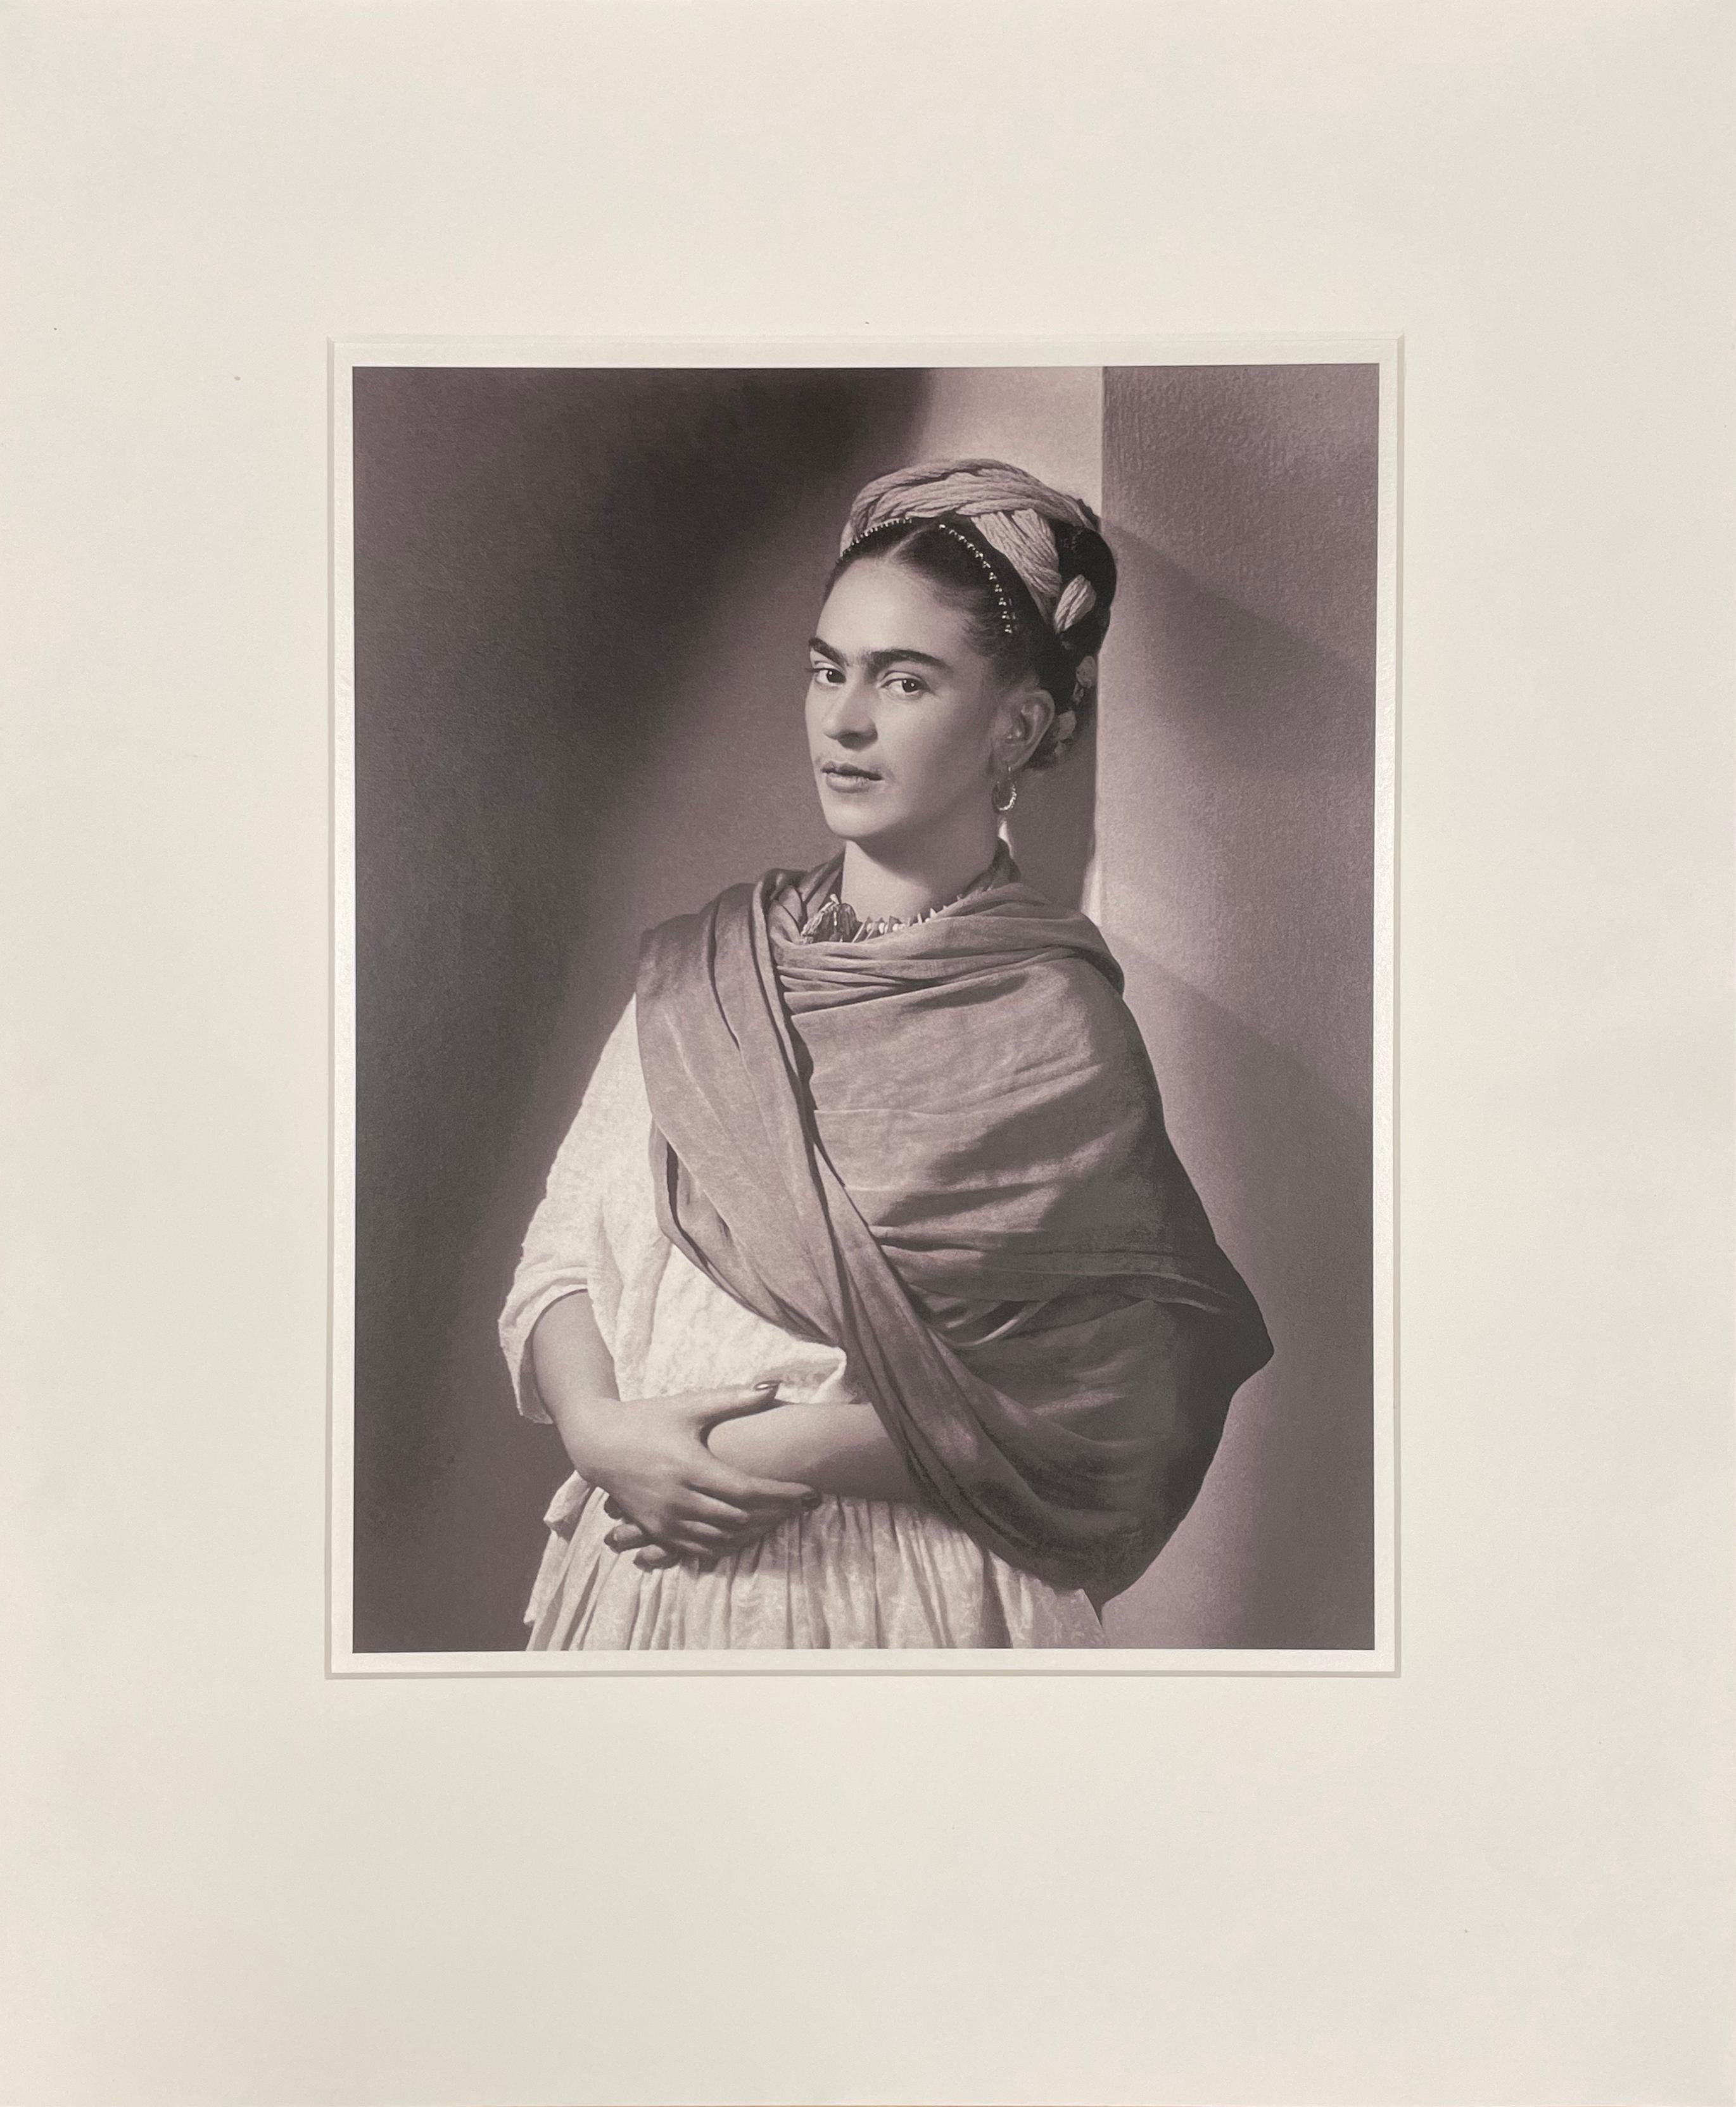 Frida Kahlo - The Breton Portrait de Nickolas Muray est un portrait de la peintre mexicaine commandé par Andre Breton.

Edition de 30
Signé par la succession de Nickolas Muray
Archives photographiques de Nickolas Muray

Nickolas Muray (1892-1965)